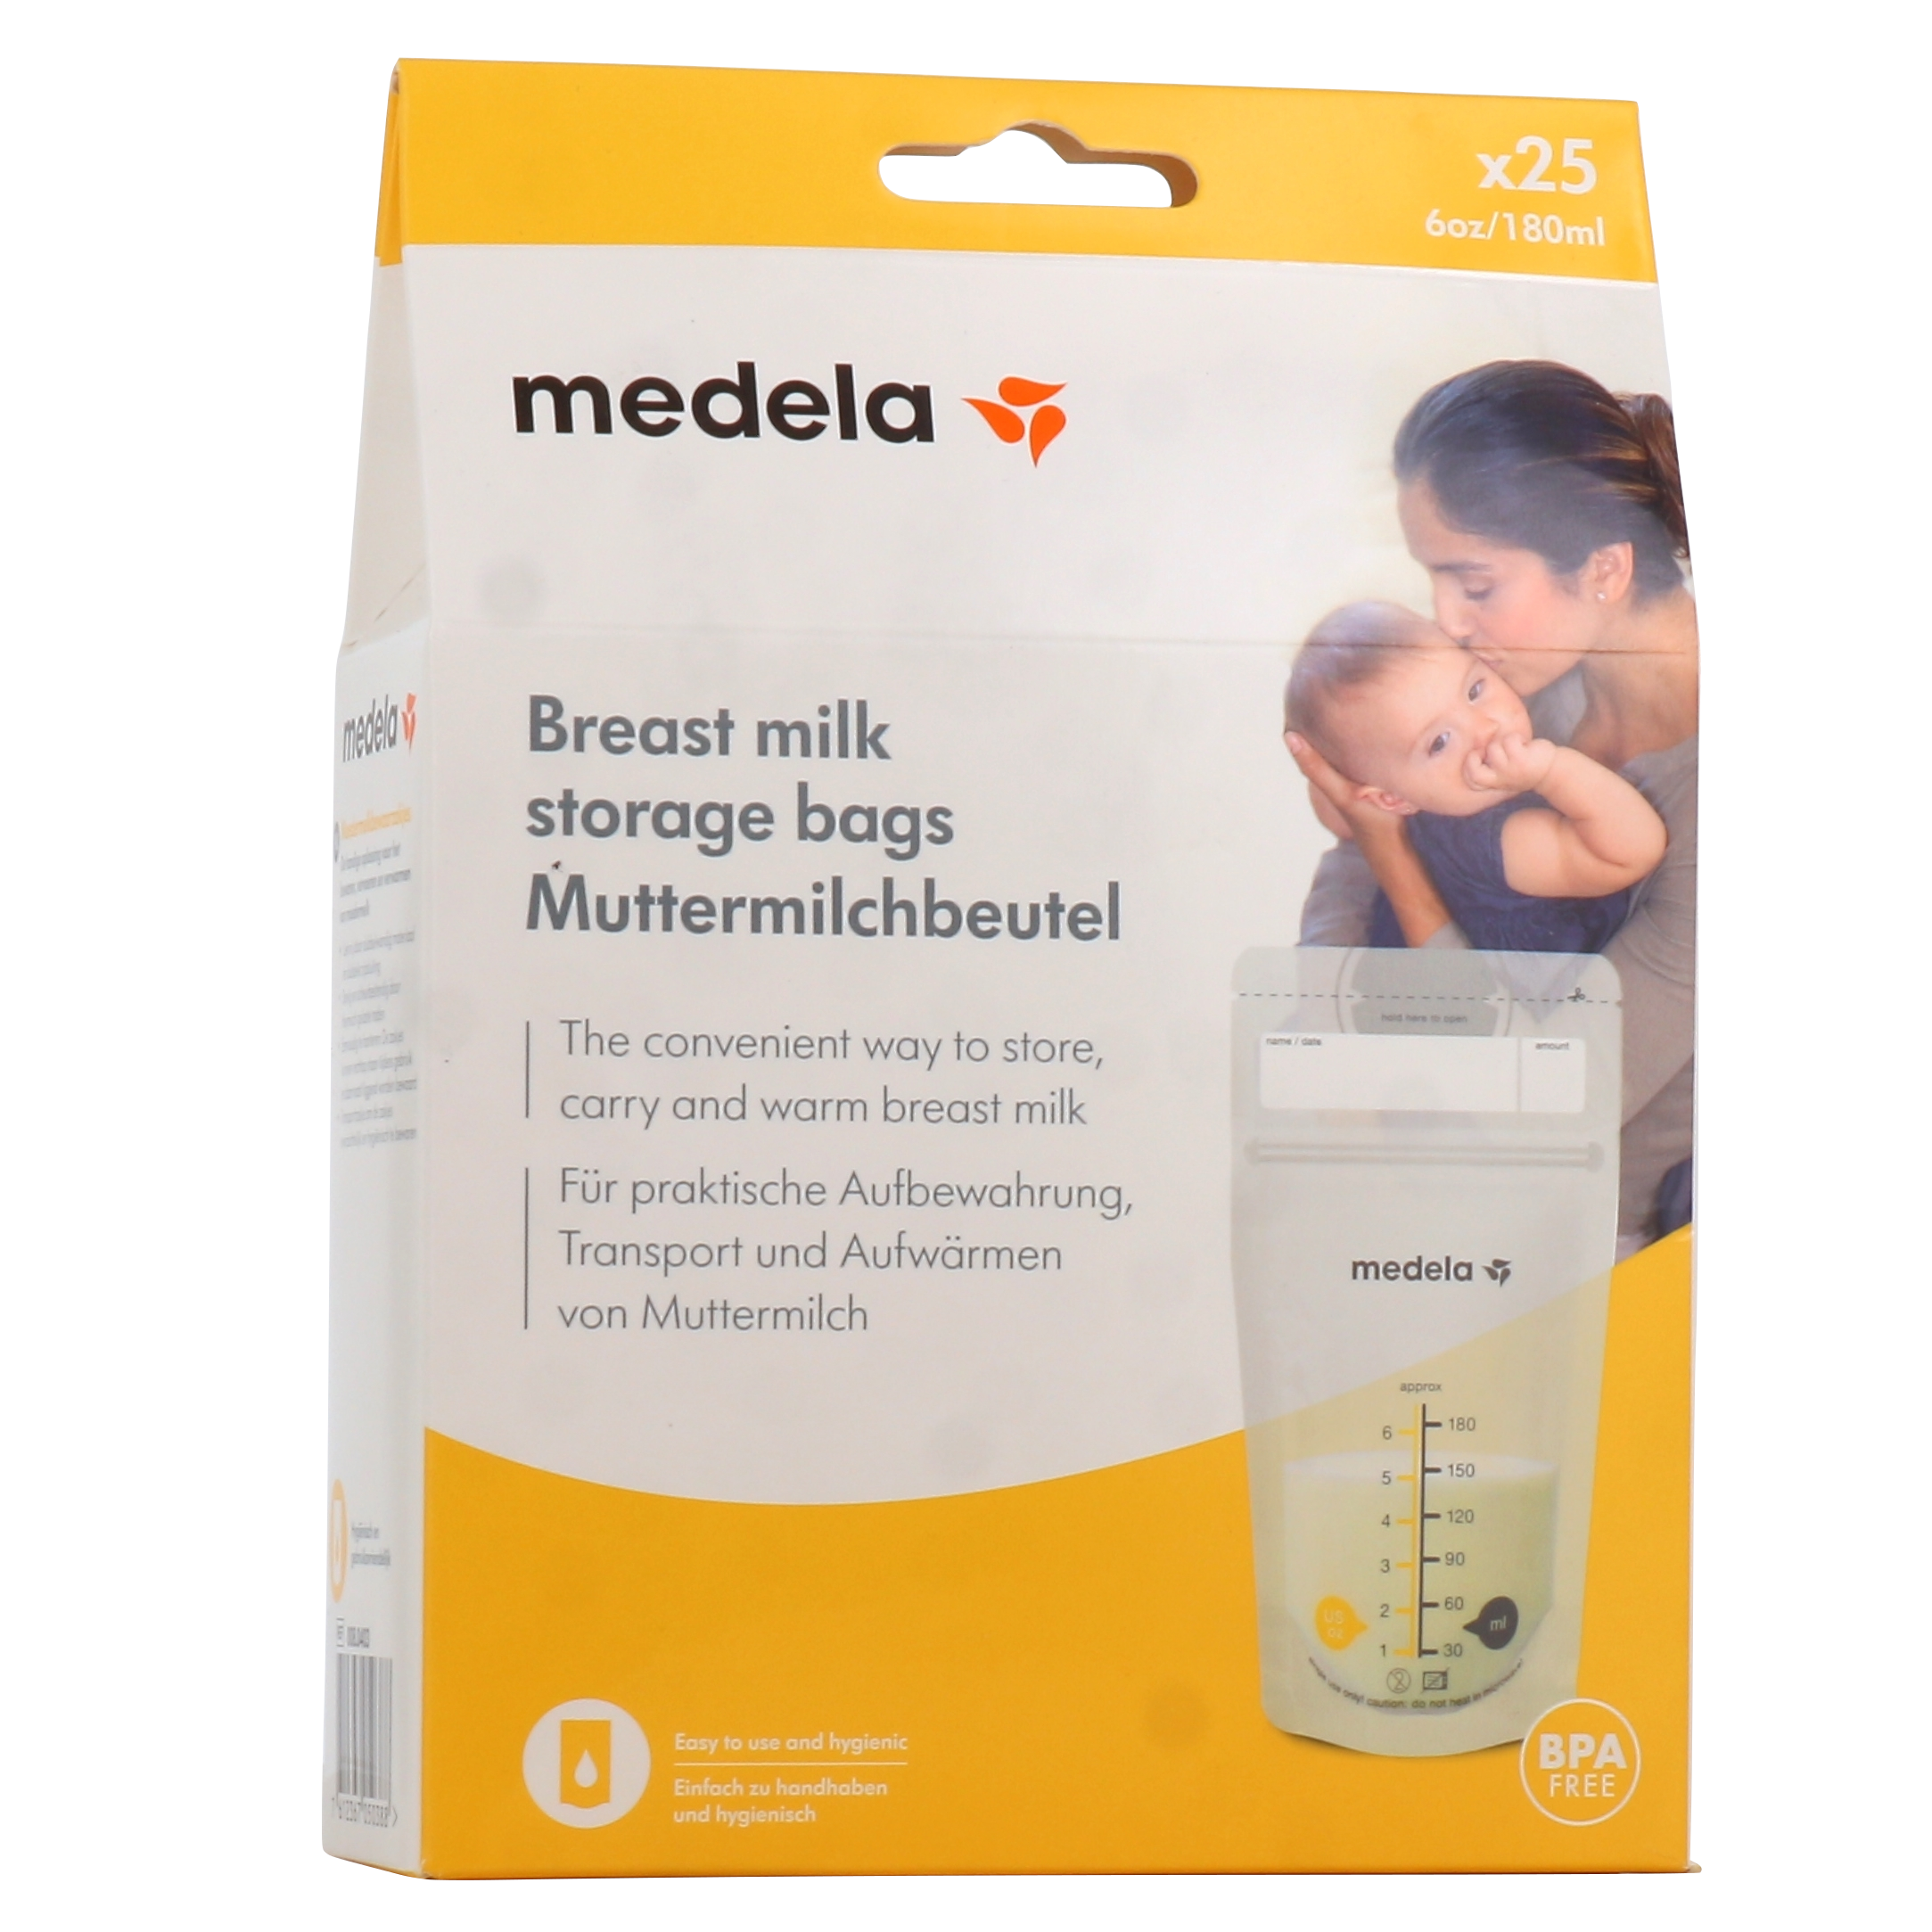 Medela - Les 50 sachets pour lait maternel